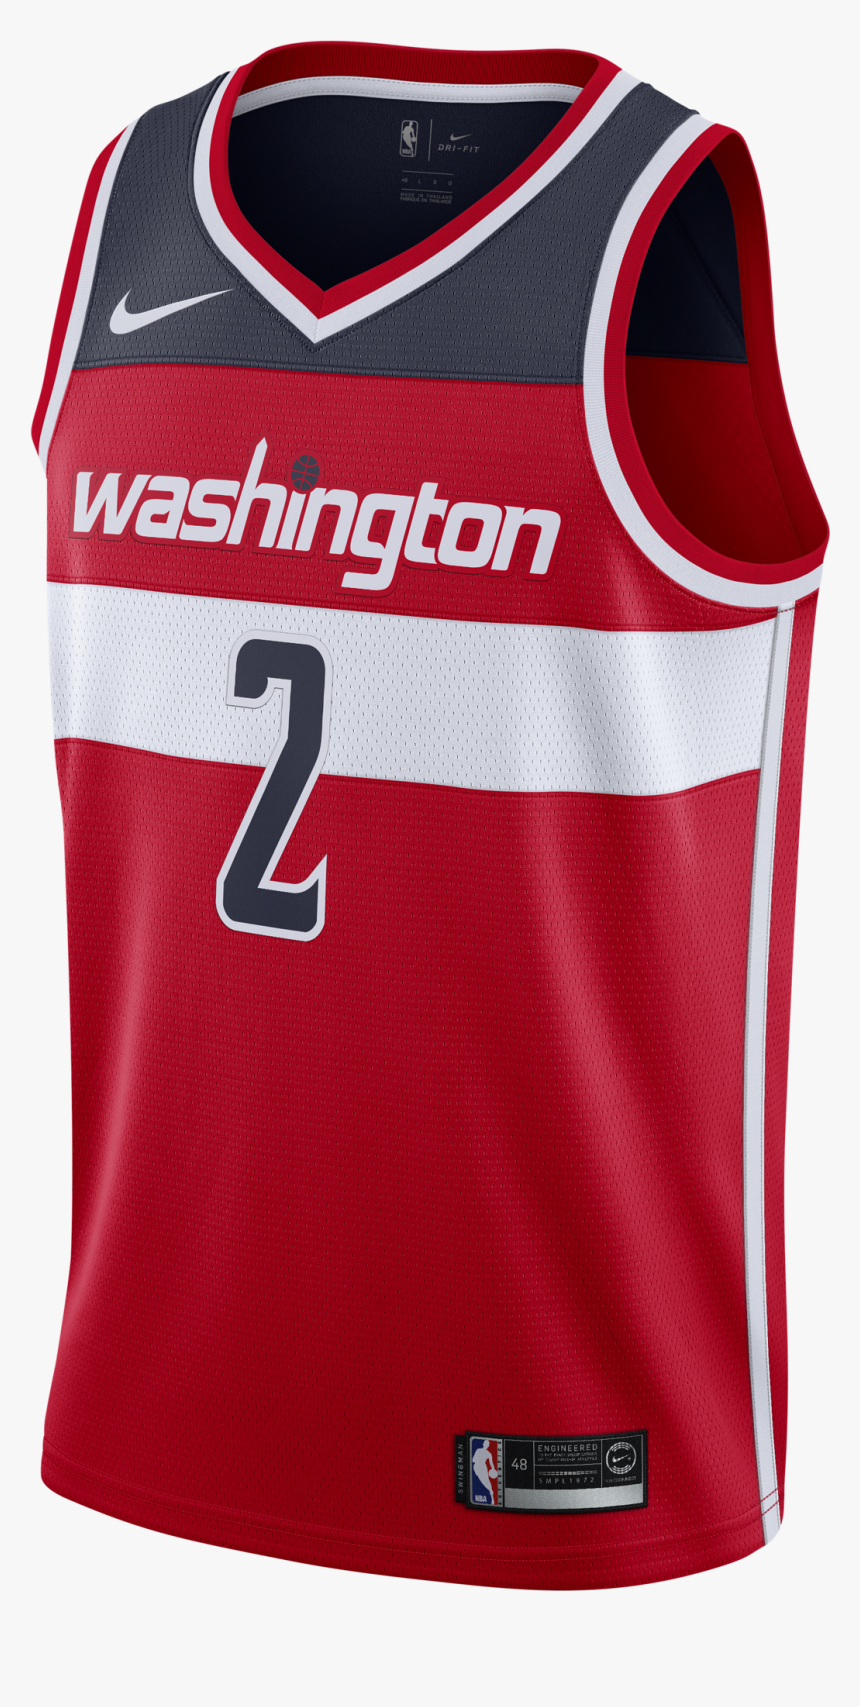 Nike Nba Washington Wizards John Wall Swingman Road - John Wall Jersey Nike, HD Png Download, Free Download